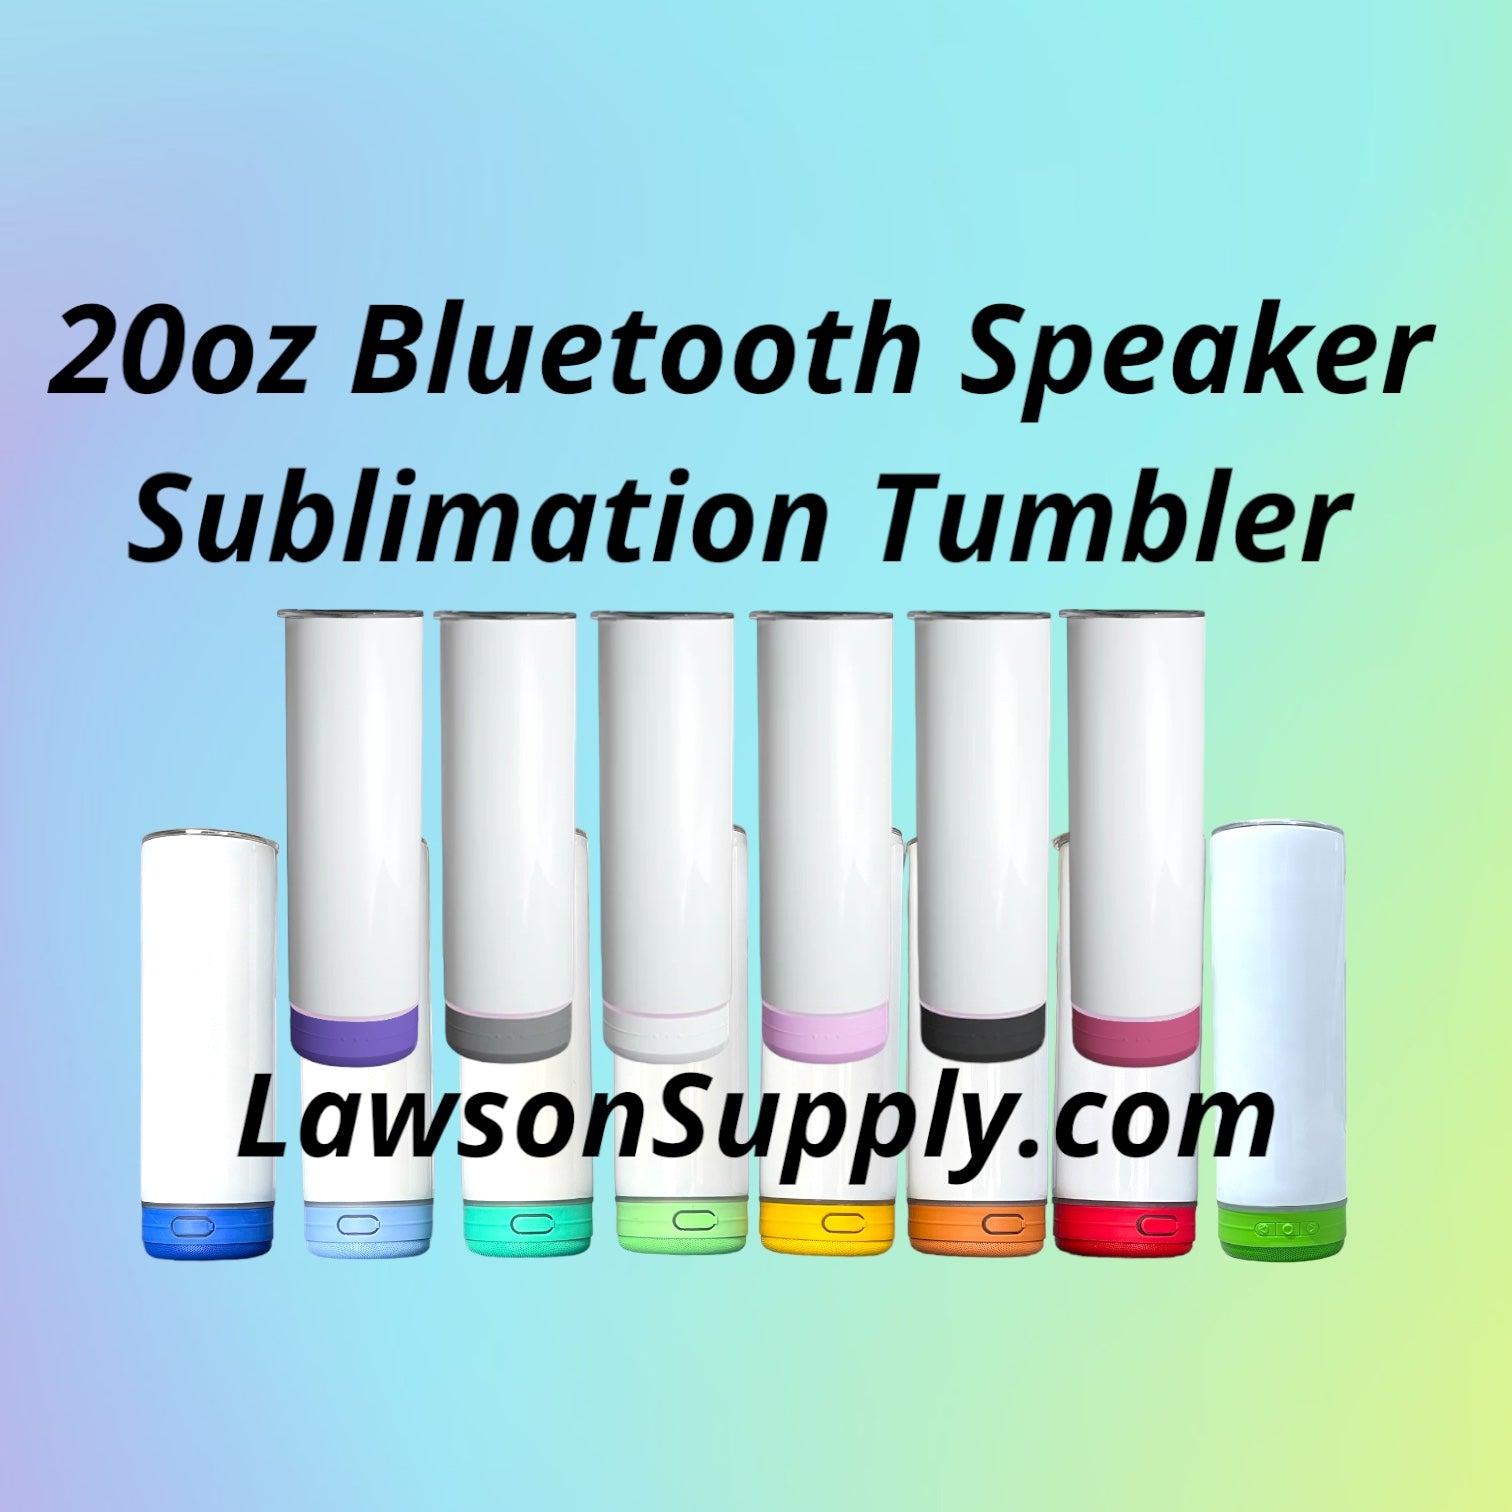 20oz Bluetooth Speaker Skinny Tumbler with White Speaker